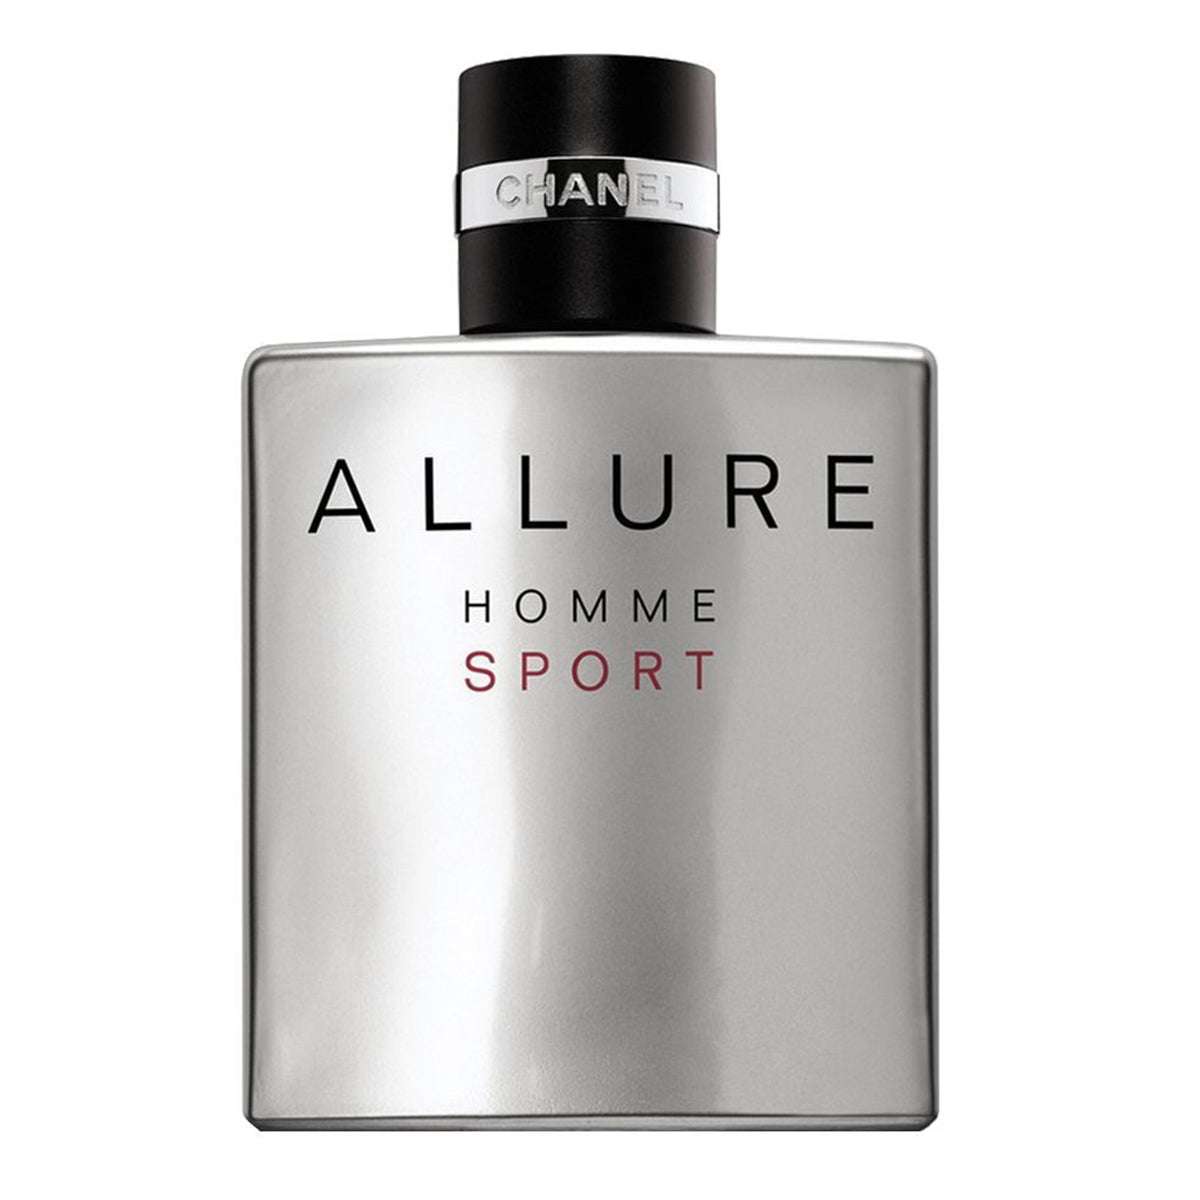 Chanel Allure Homme Sport Edt Perfume For Men 100Ml - Allurebeautypk